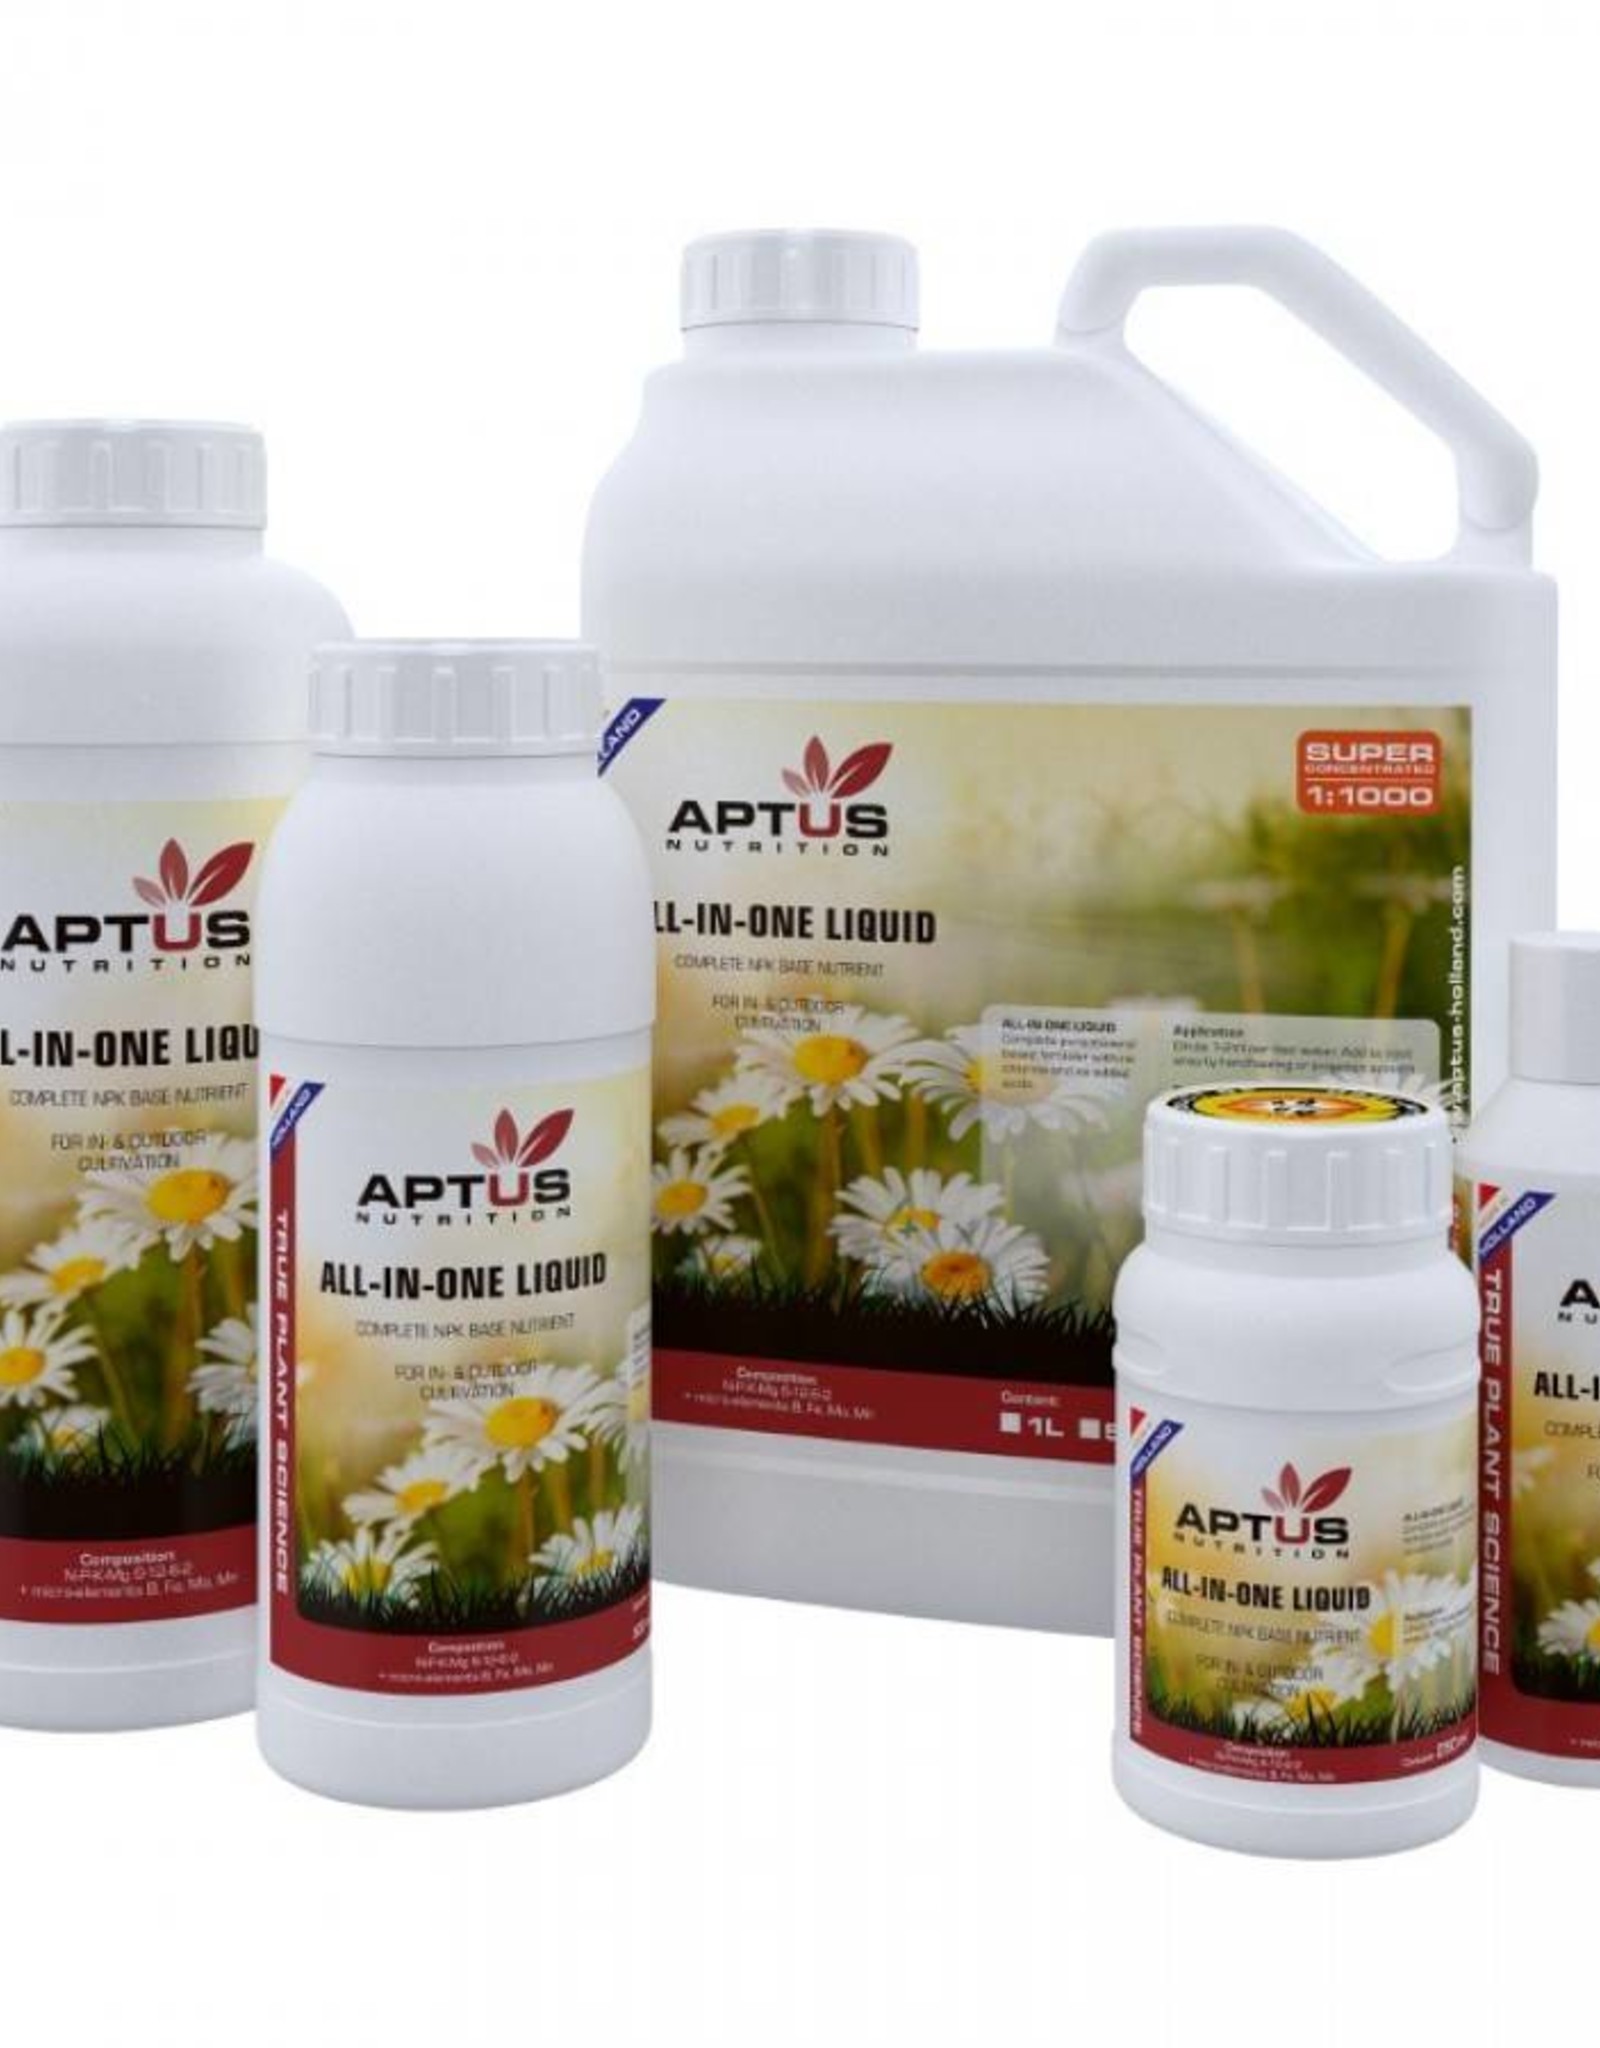 Aptus Aptus All-in-One Liquid